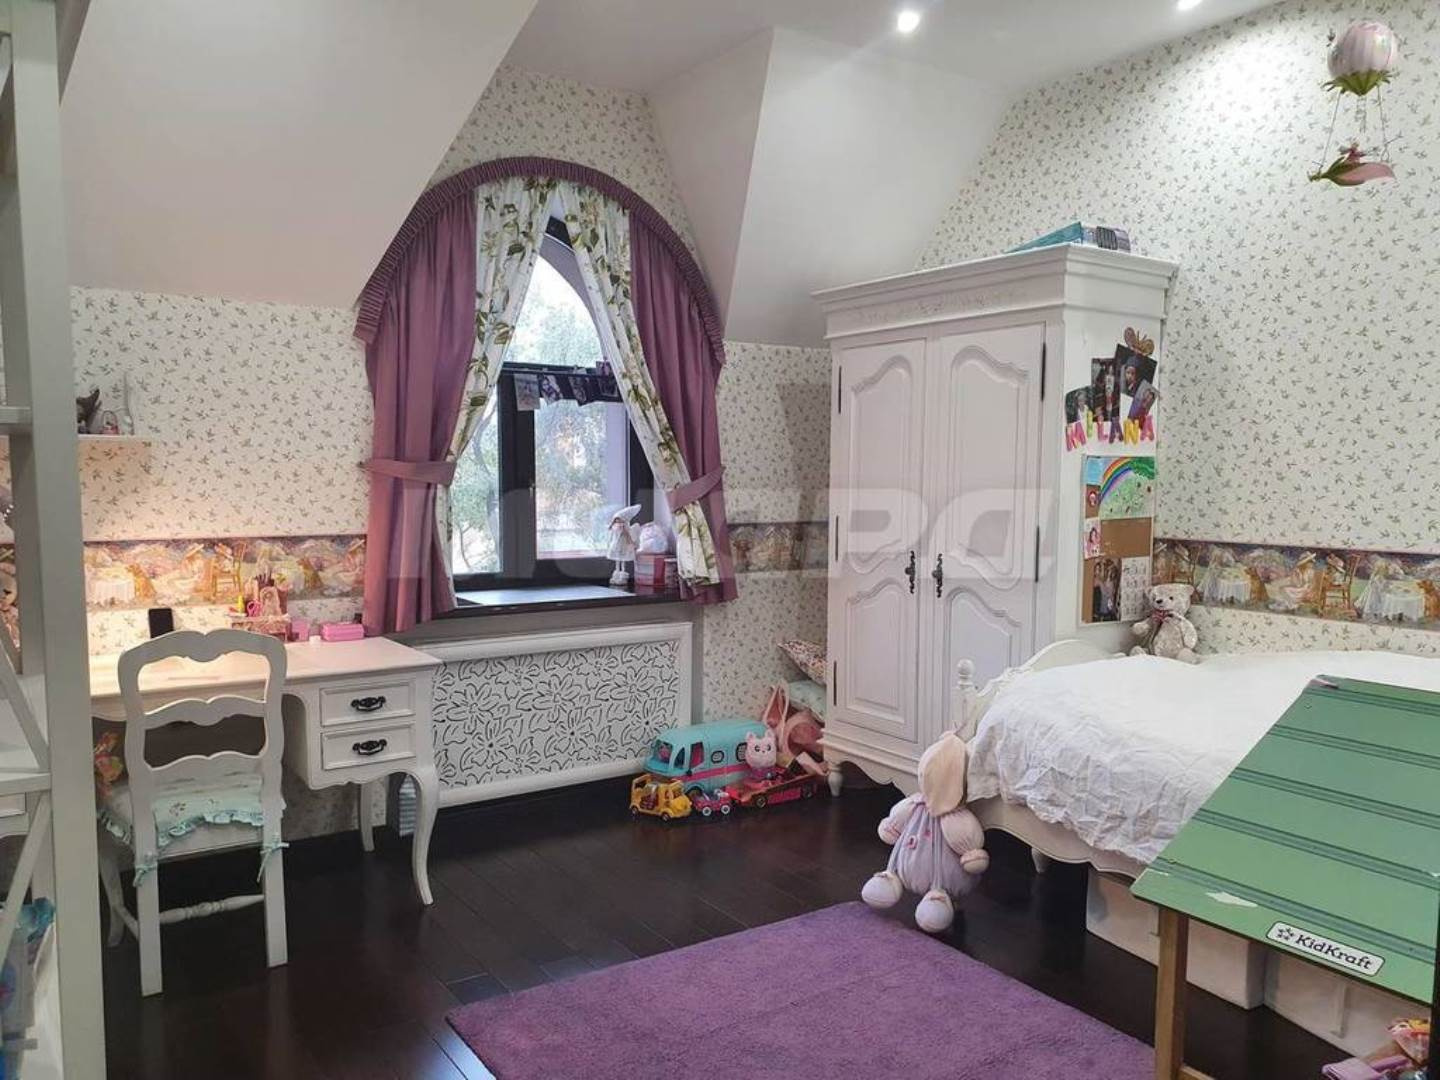 Так выглядит детская комната для девочки